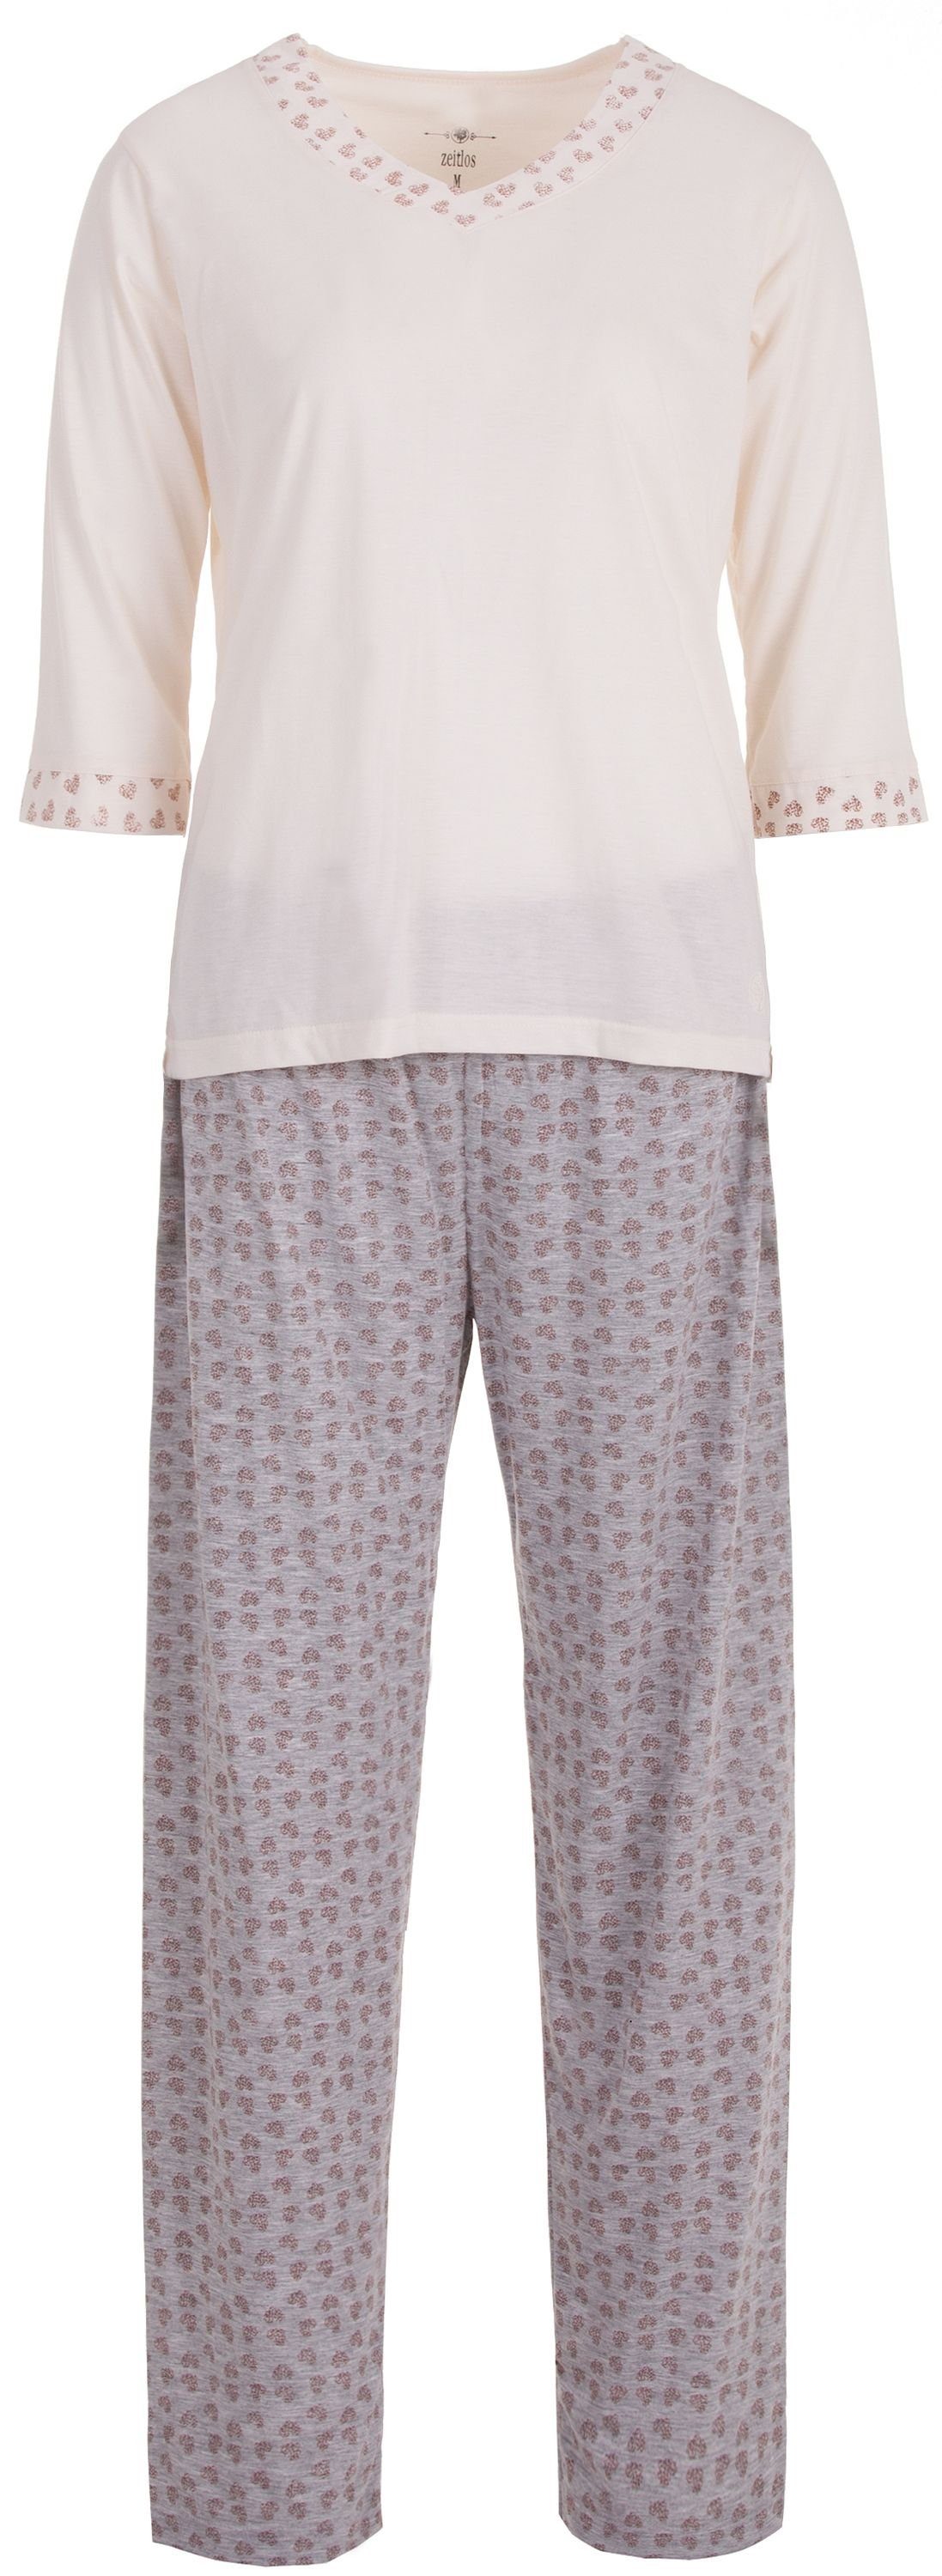 zeitlos Schlafanzug Pyjama Set 3/4 Arm - Heart off-white